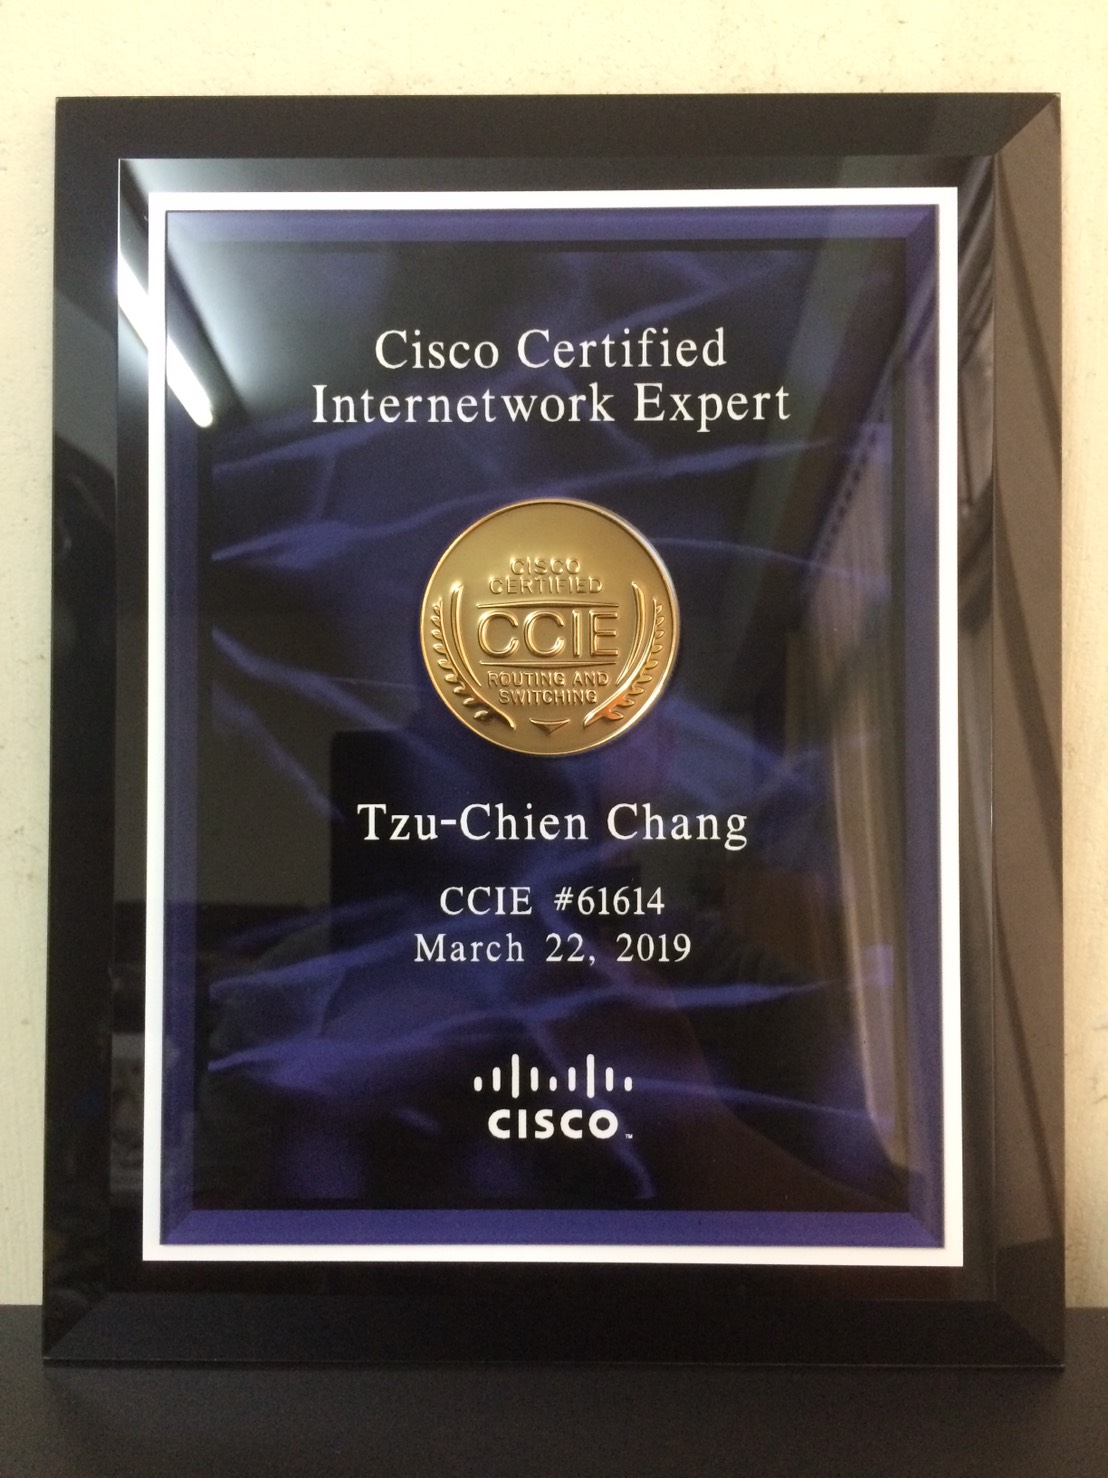 賀 本系張子謙 資四b 同學考取思科認證網際網路專家 Ccie Cisco Certified Internetwork Expert 國際證照 朝陽科技大學資訊管理系